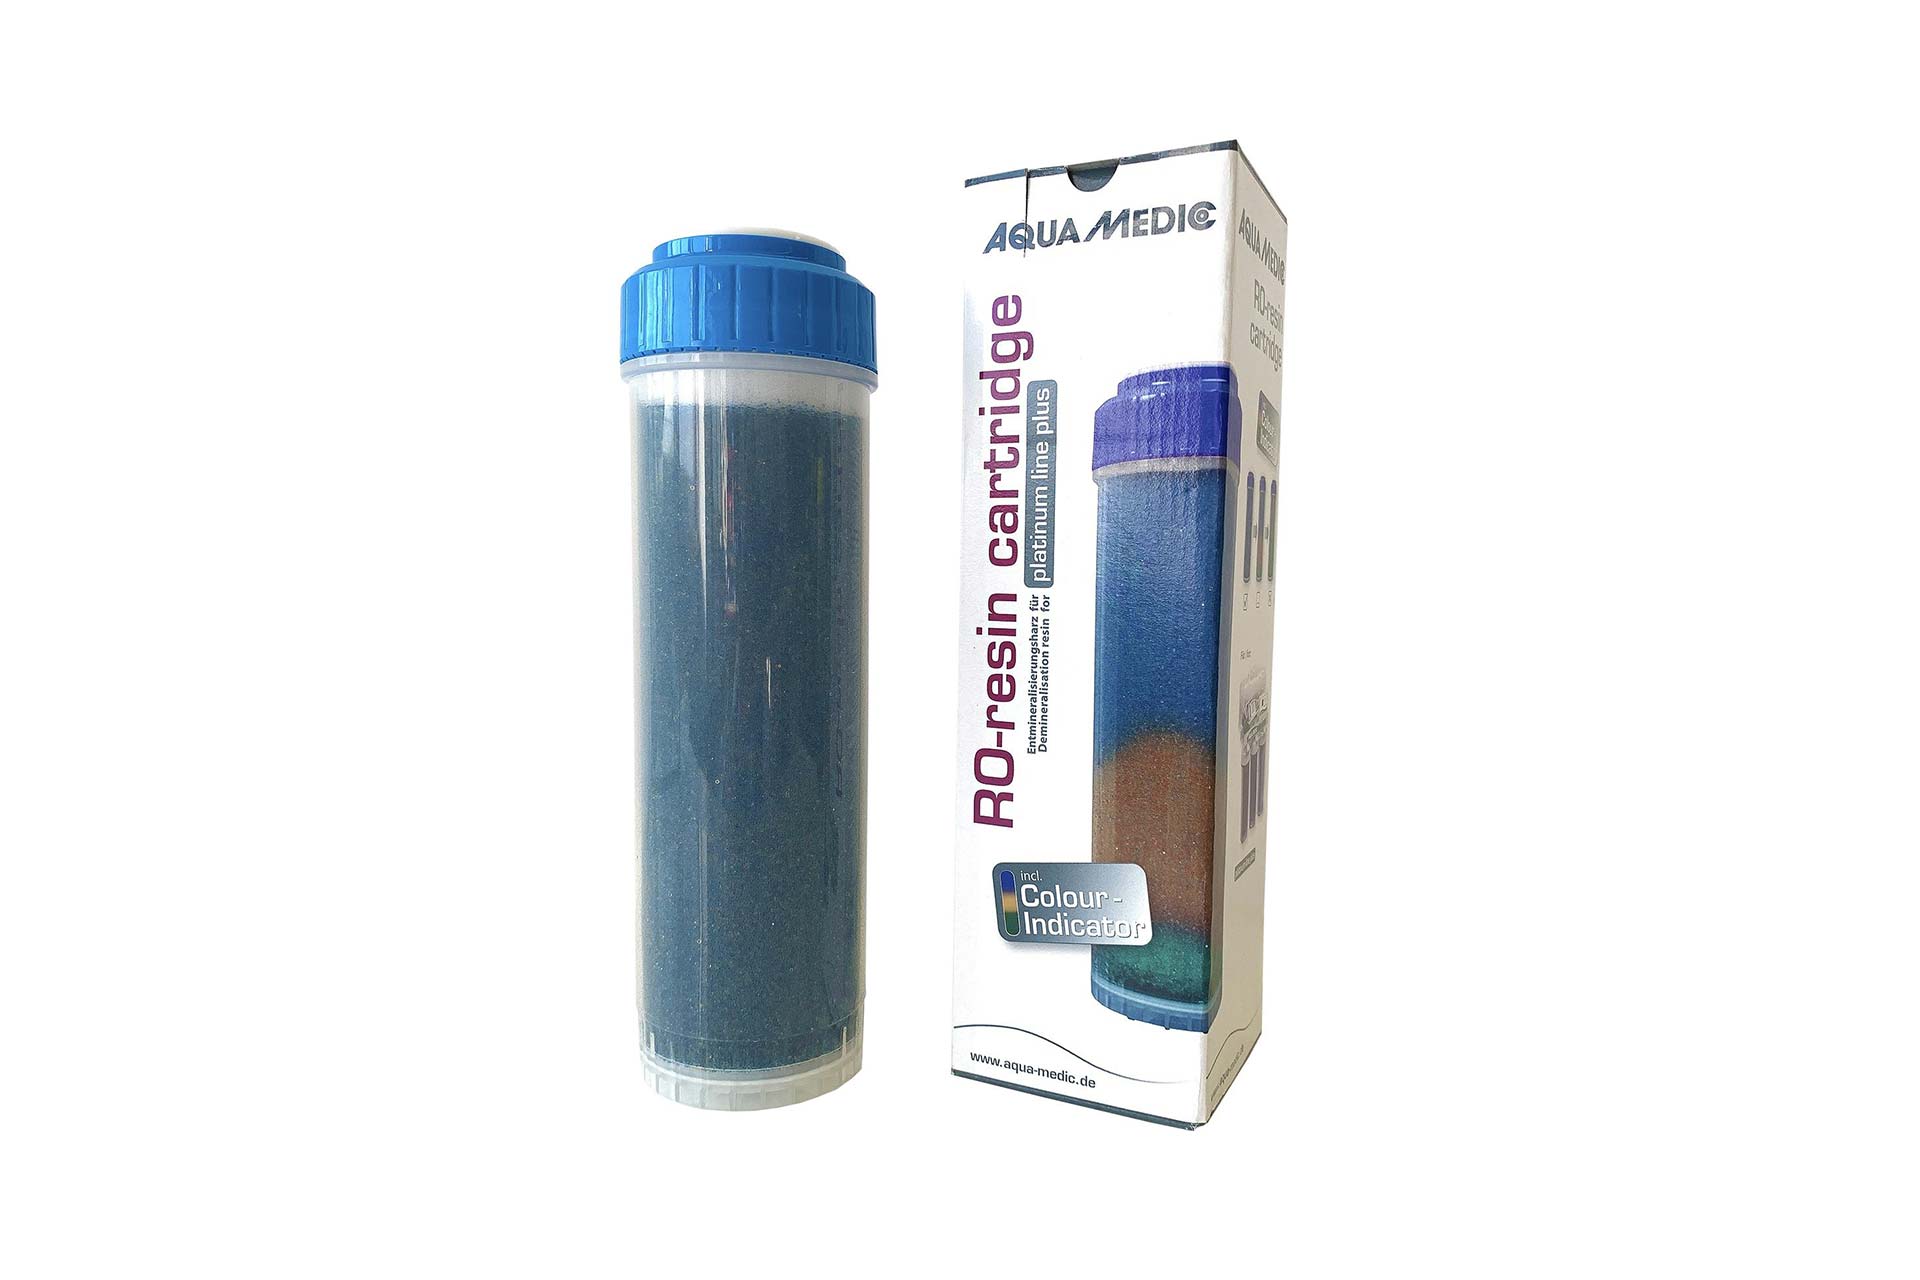 Aqua Medic RO Demineralizing Resin Cartridge